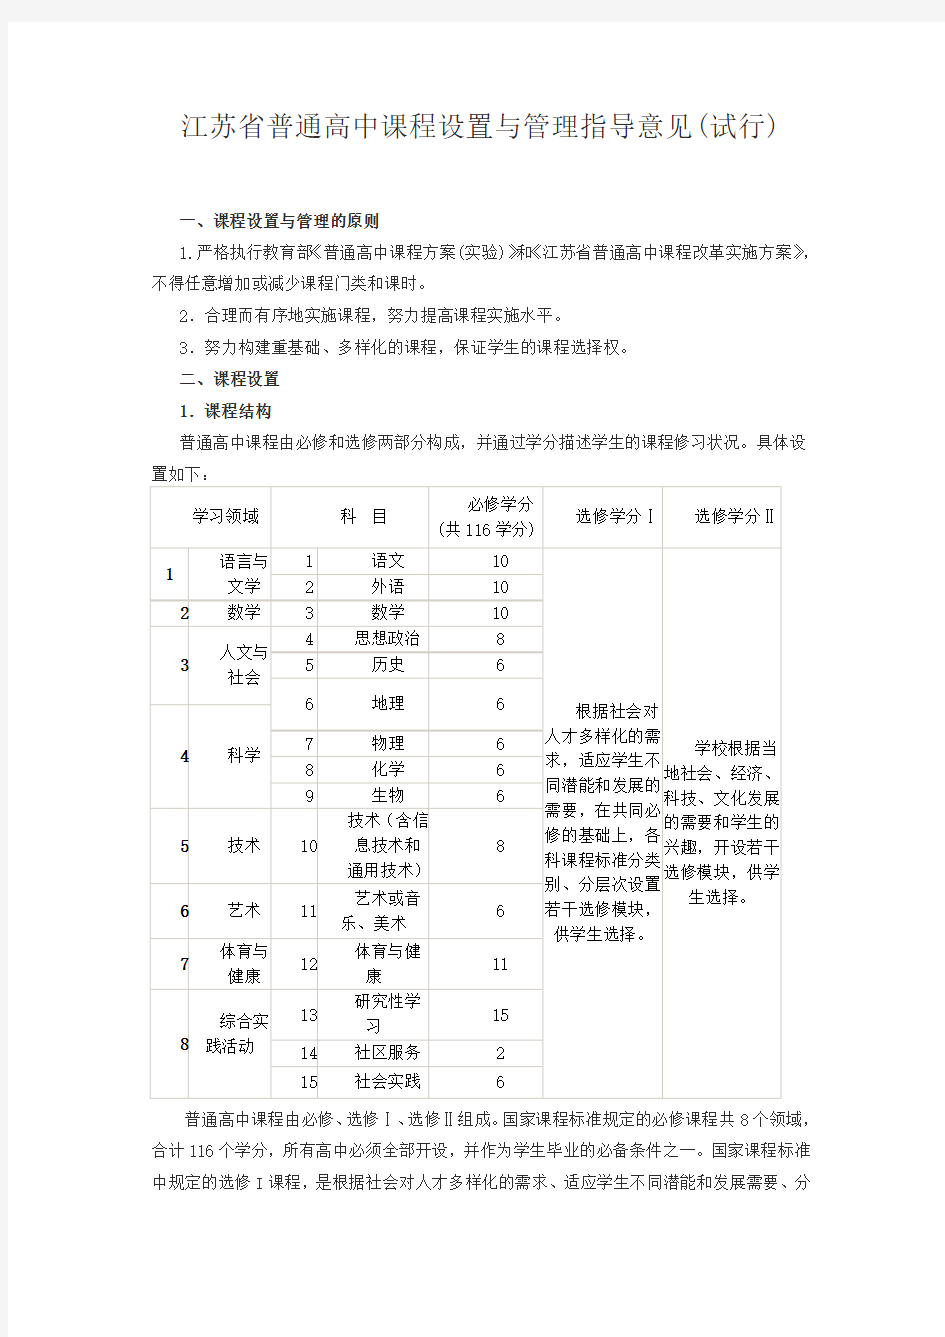 江苏省普通高中课程设置与管理指导意见(试行)